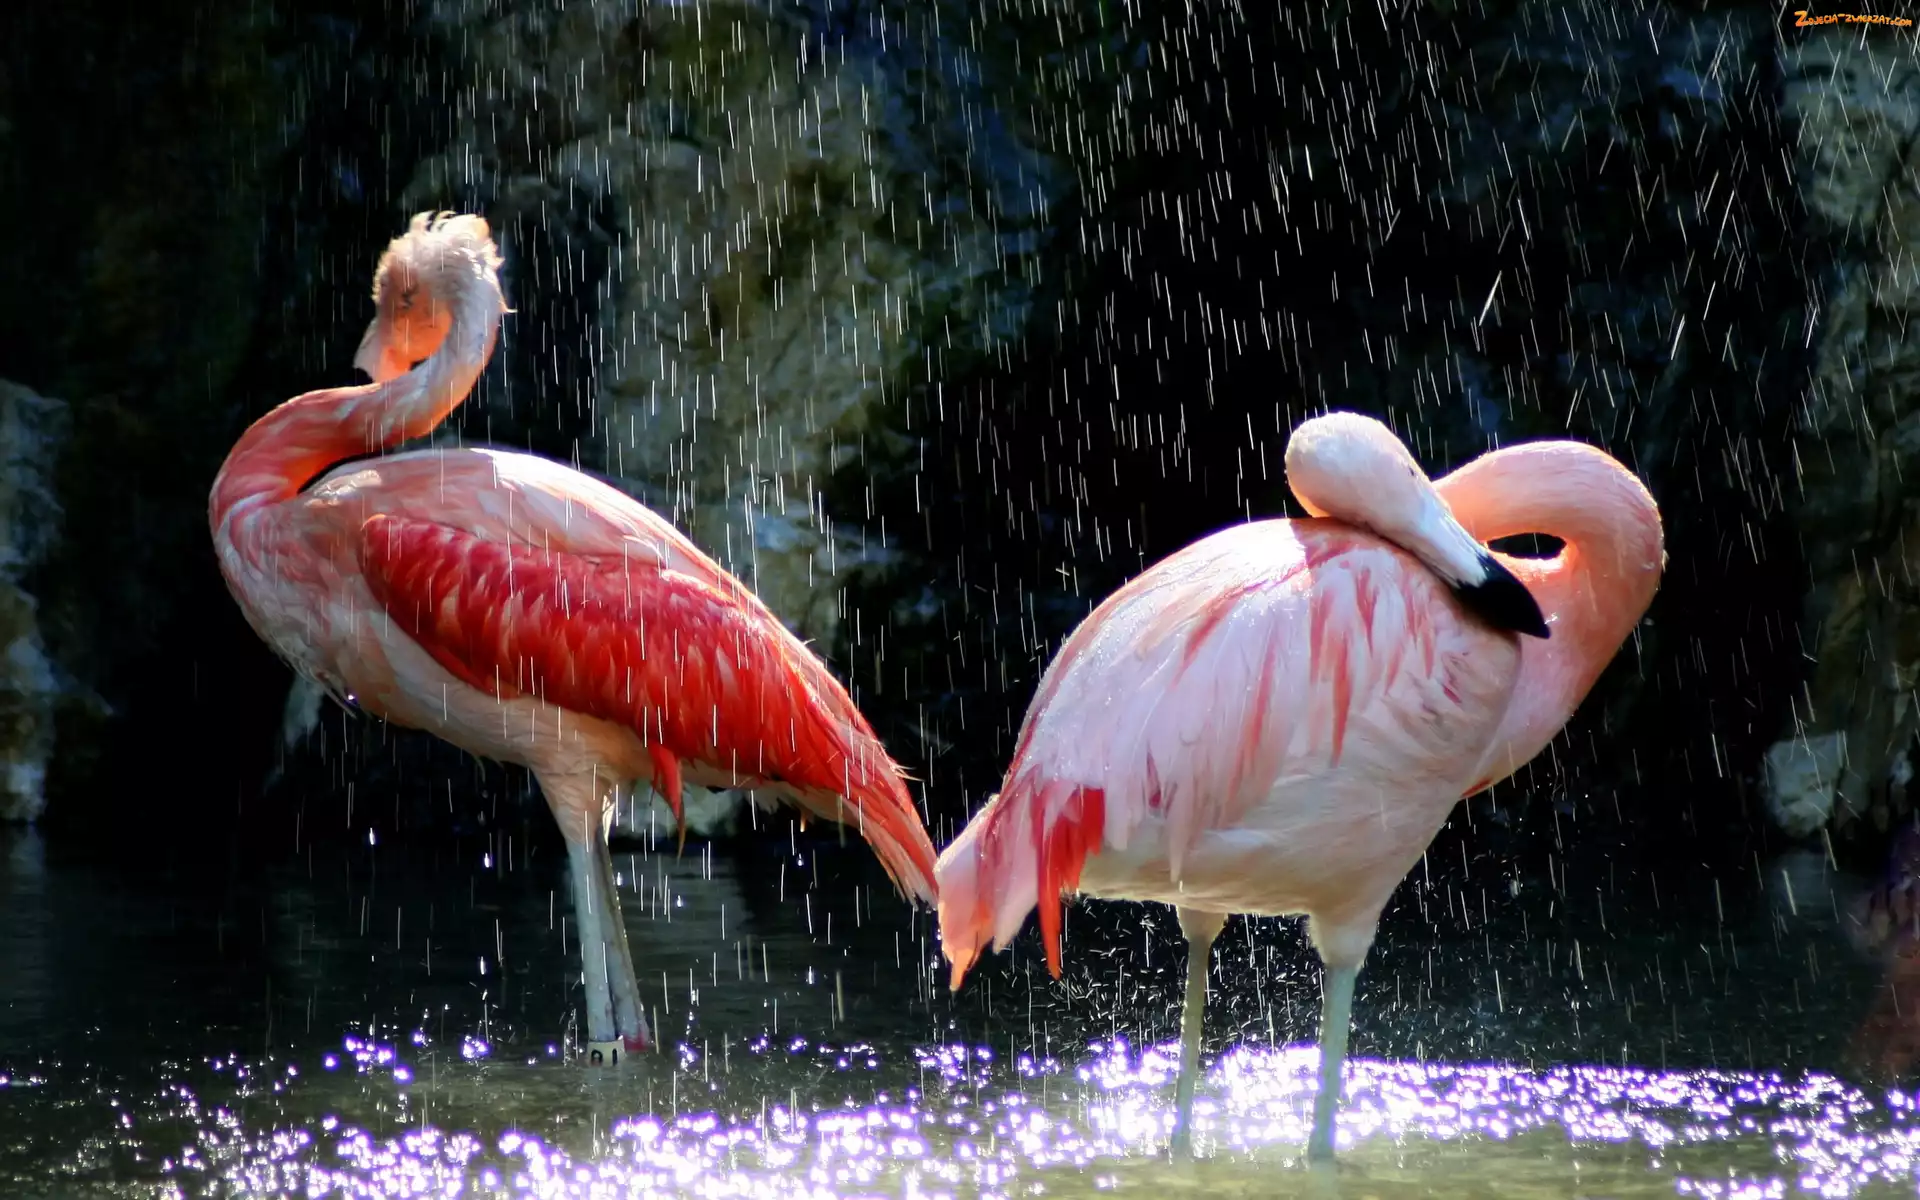 Deszcz, Dwa, Flamingi